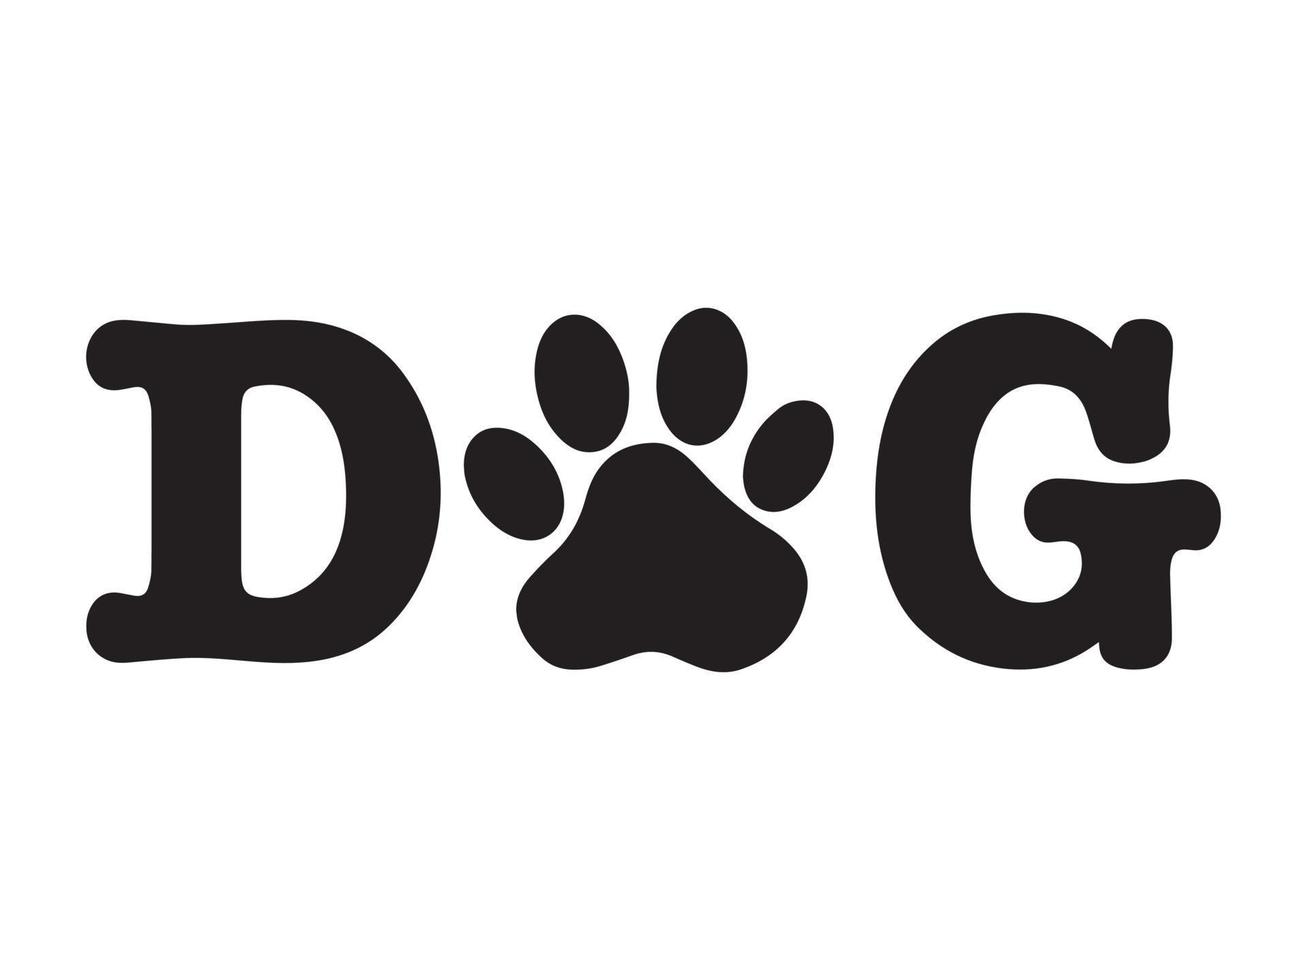 text svart hund med ett djur- Tass skriva ut istället av de brev o. sällskapsdjur fotavtryck i de ord hund. minimalistisk sällskapsdjur vektor logotyp redo för webb och skriva ut.